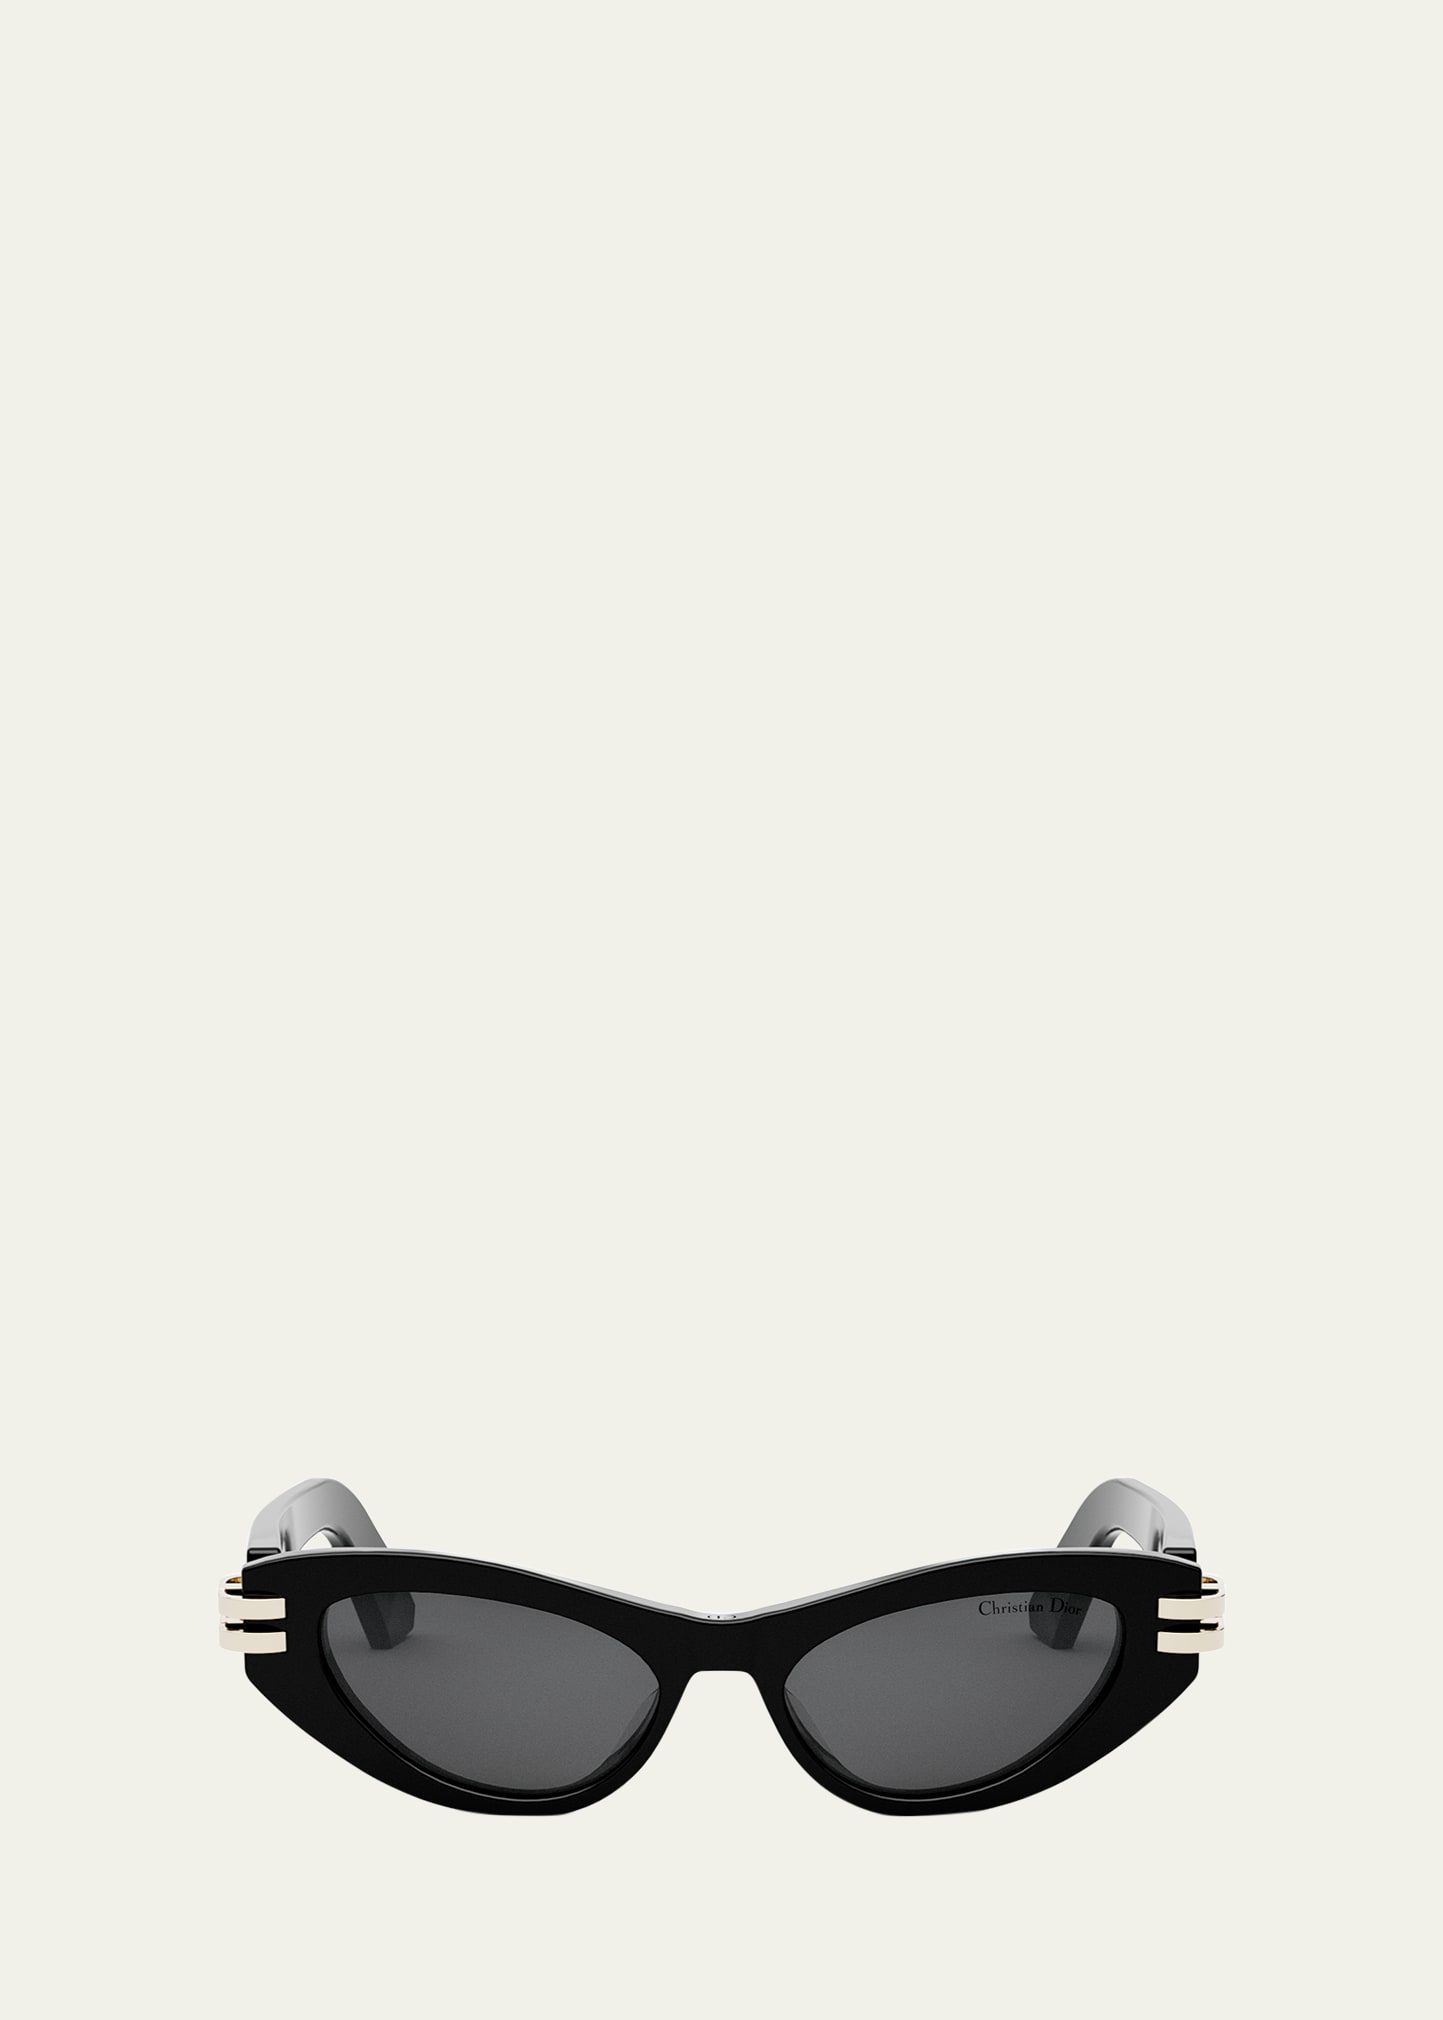 CDior B1U Sunglasses